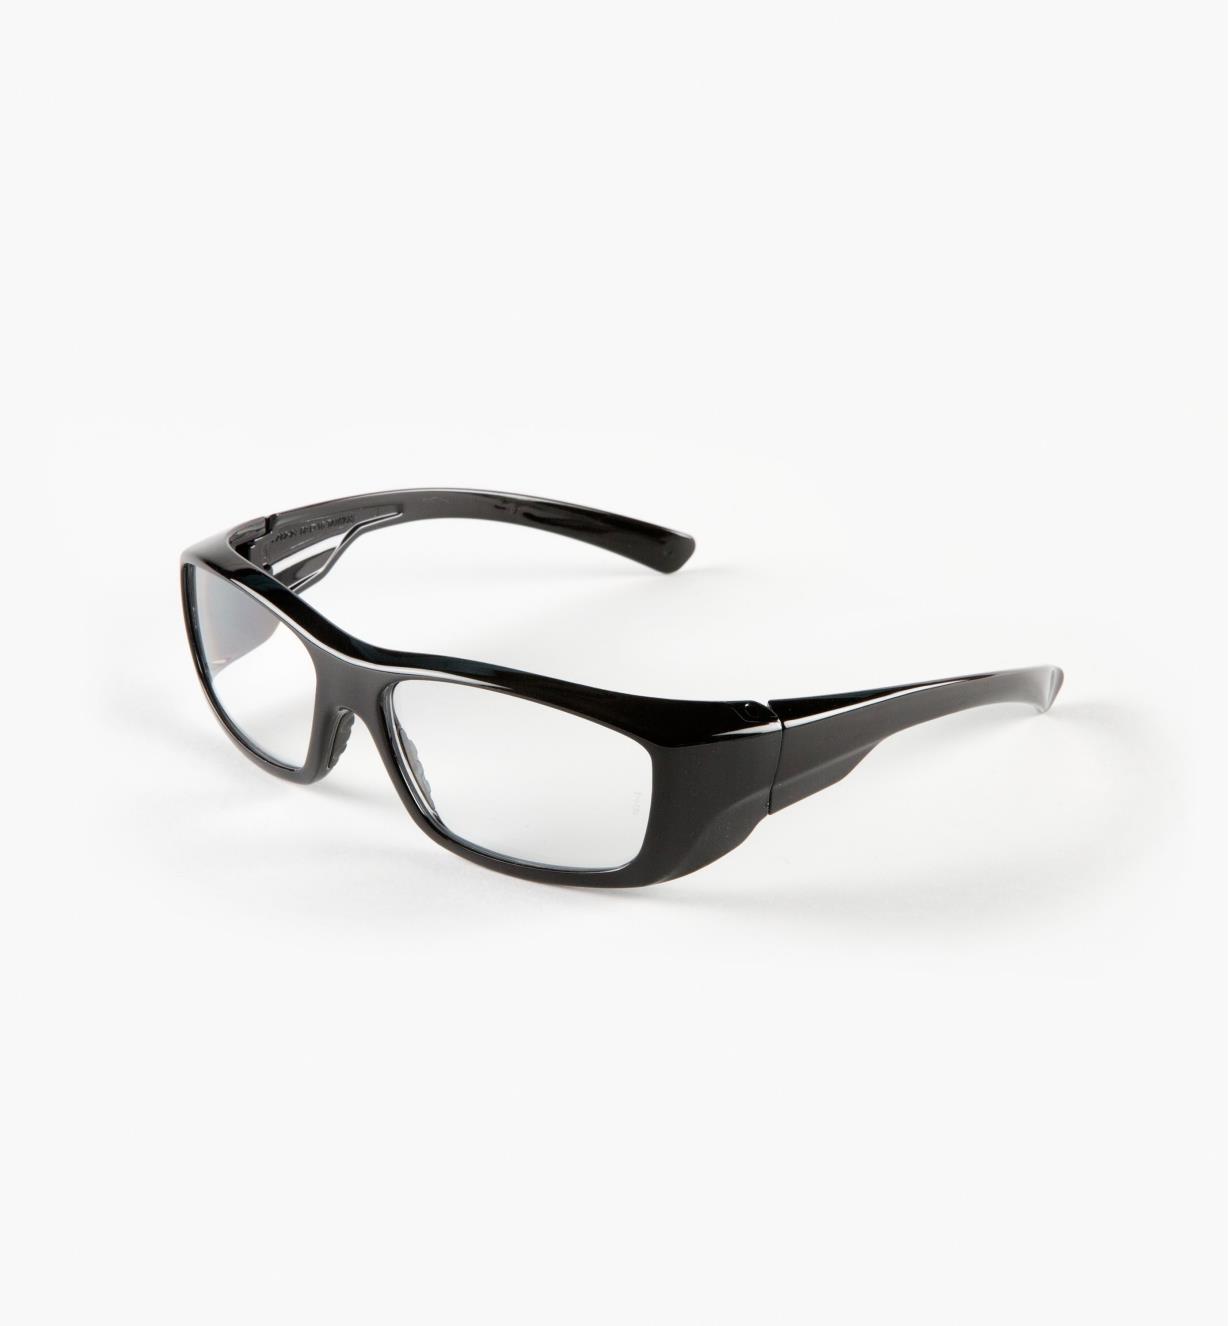 22R7335 - +1.5 Full-Lens Magnifying Safety Glasses